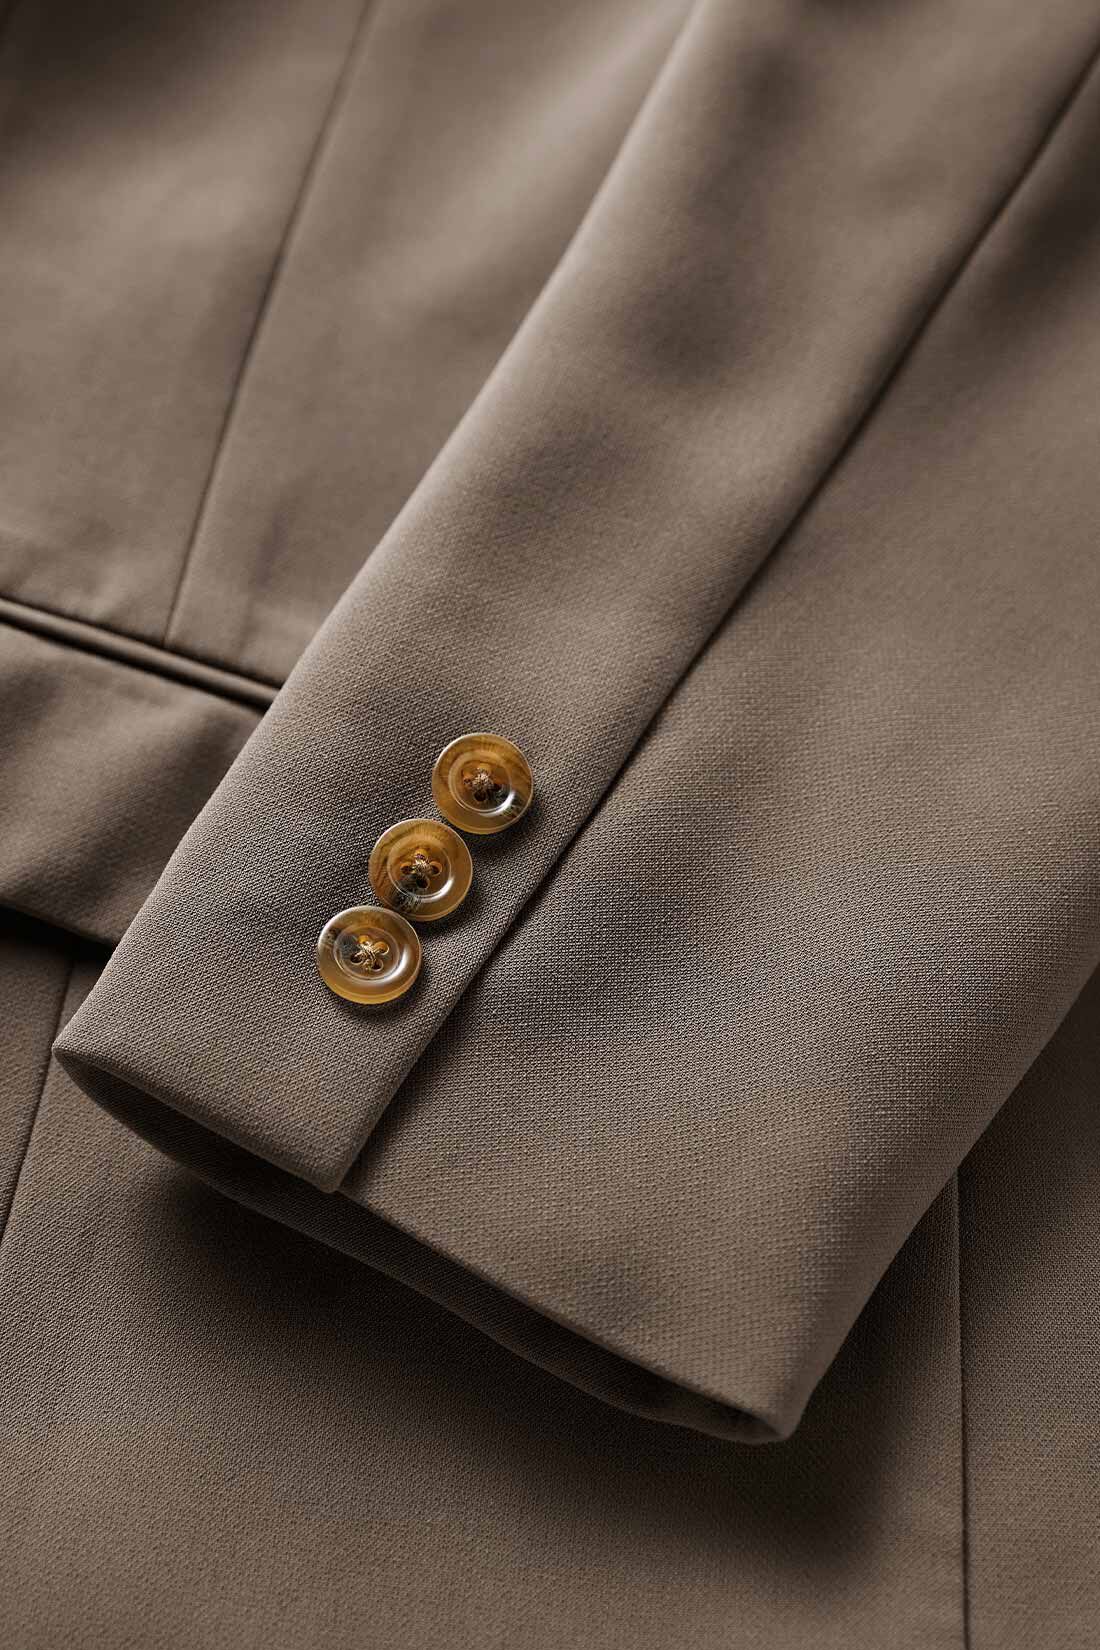 イディット|IEDIT[イディット]　スーツ屋さん監修 洗練こなれセットアップ〈モカブラウン〉|【素材】ほどよい厚みのある布はく素材や厚めのボタンもリッチな表情。